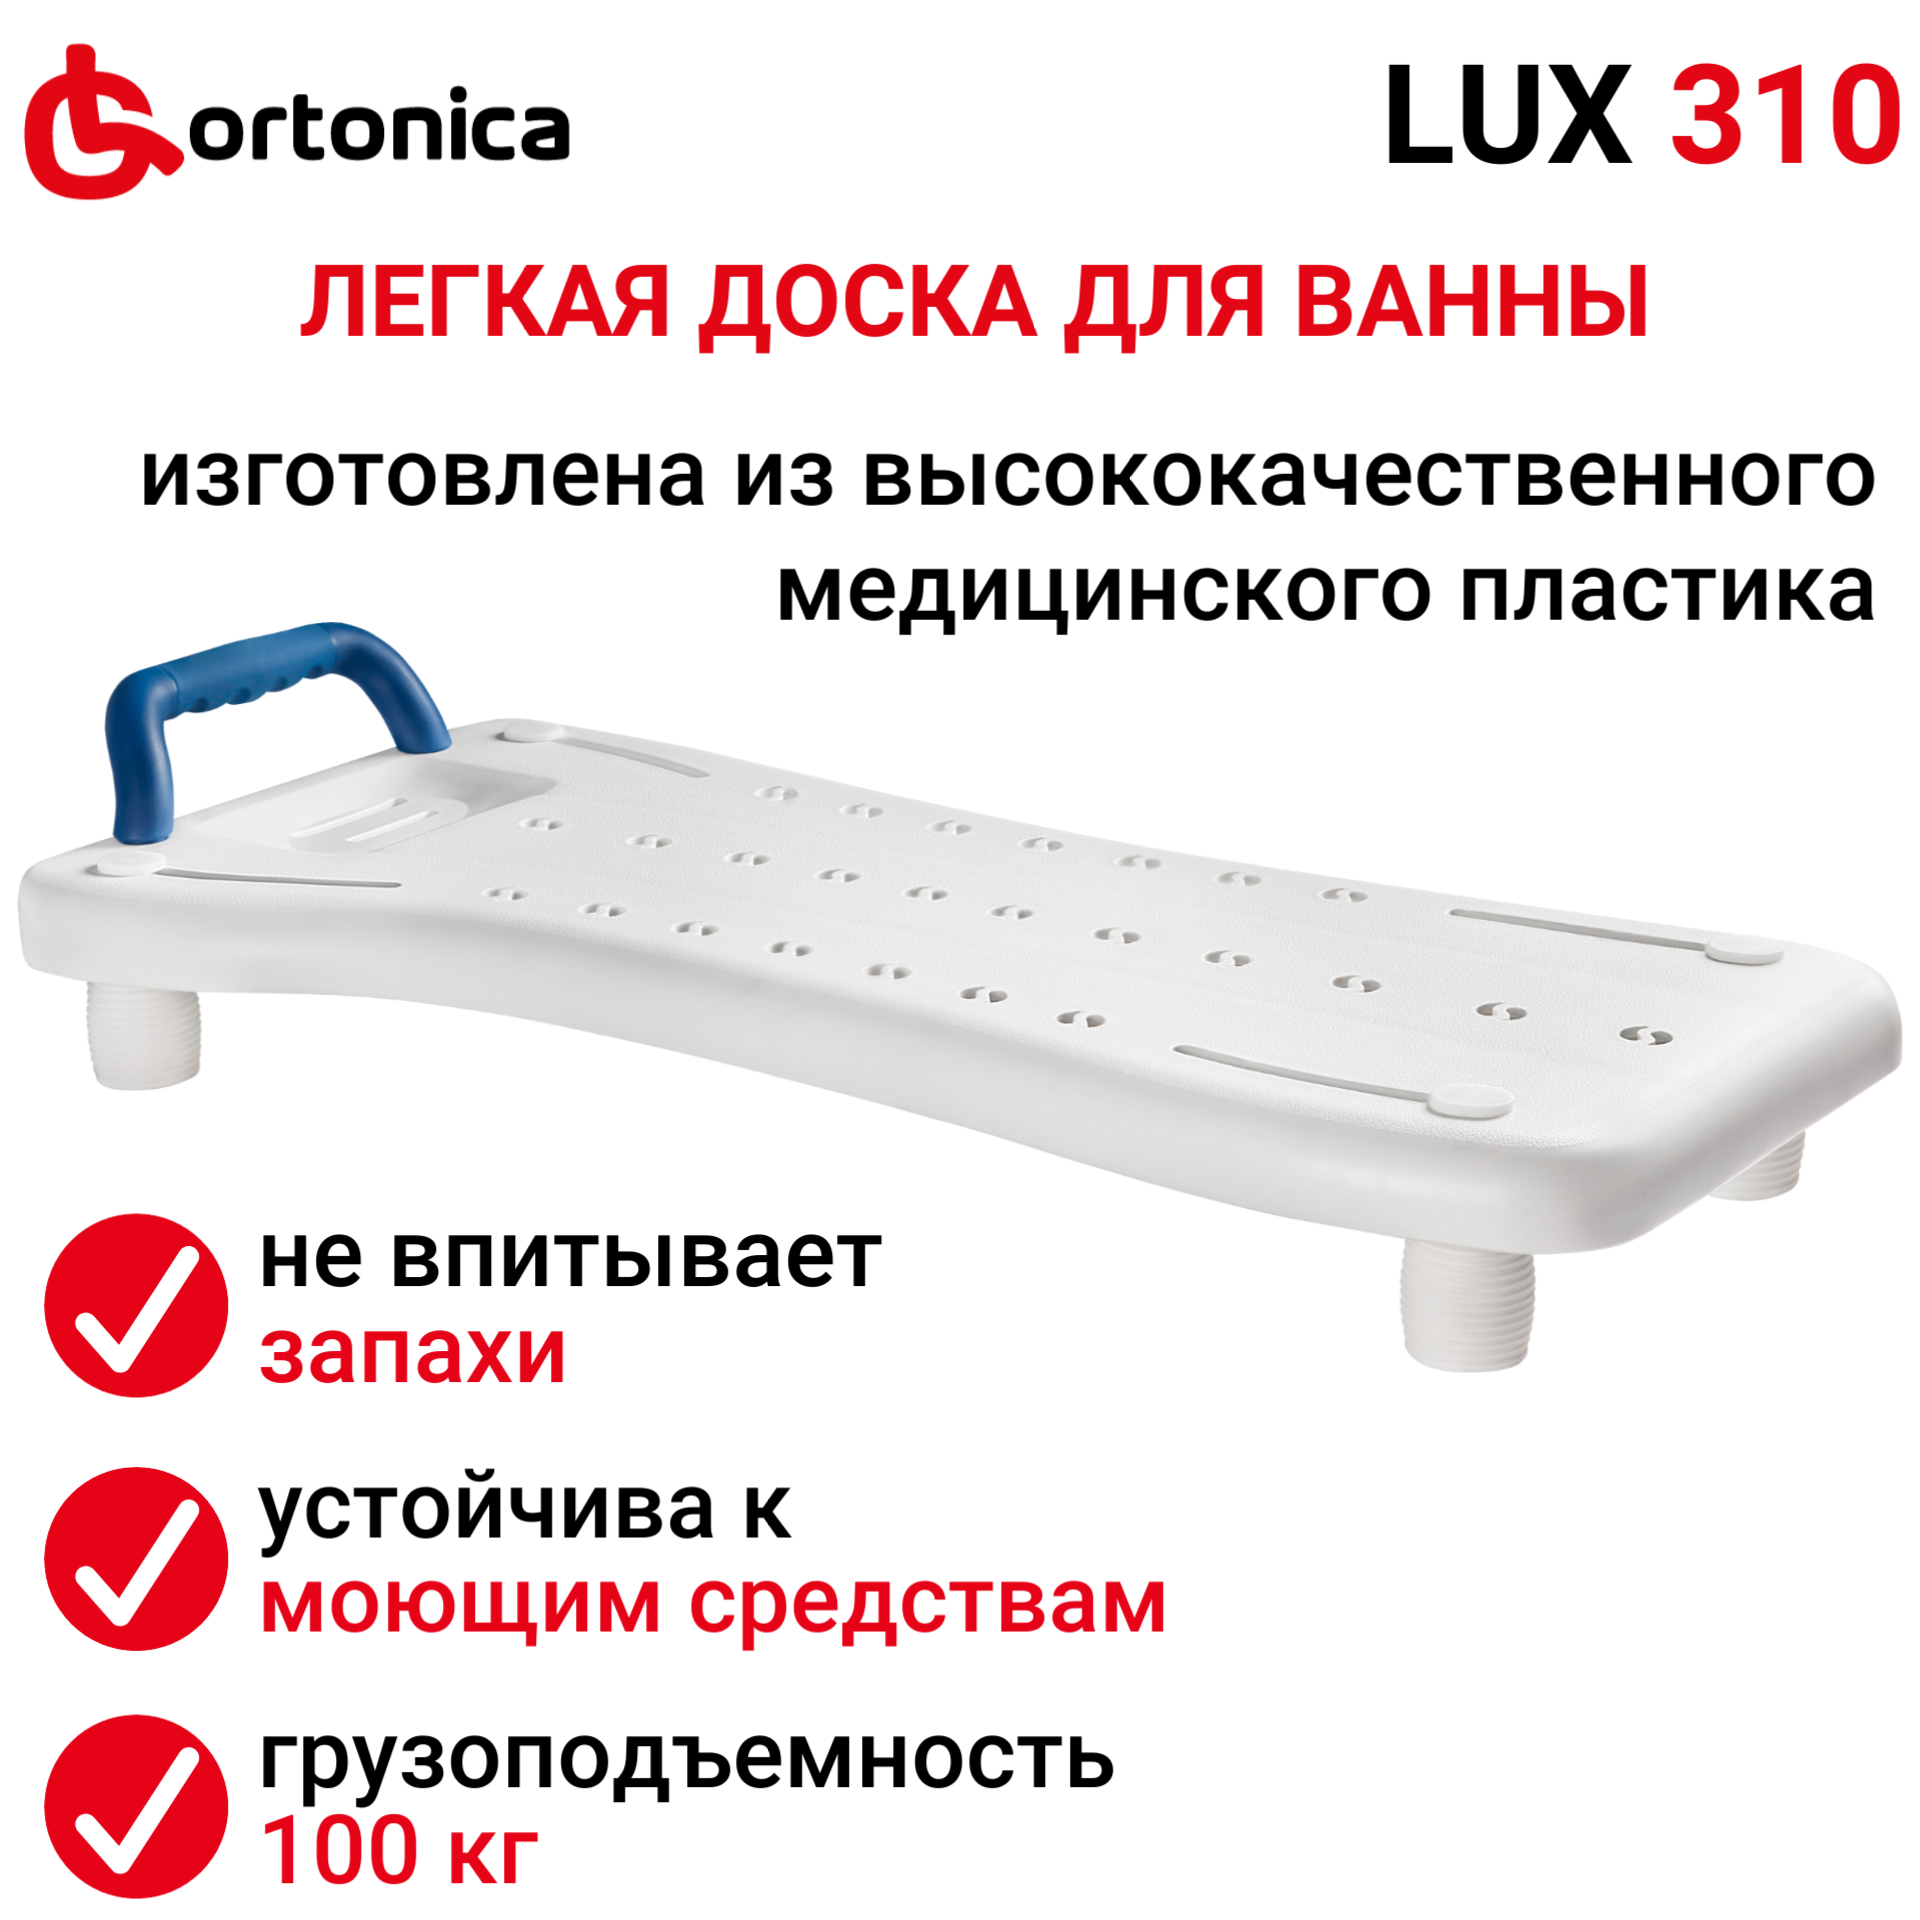 Доска для ванны Ortonica LUX 310